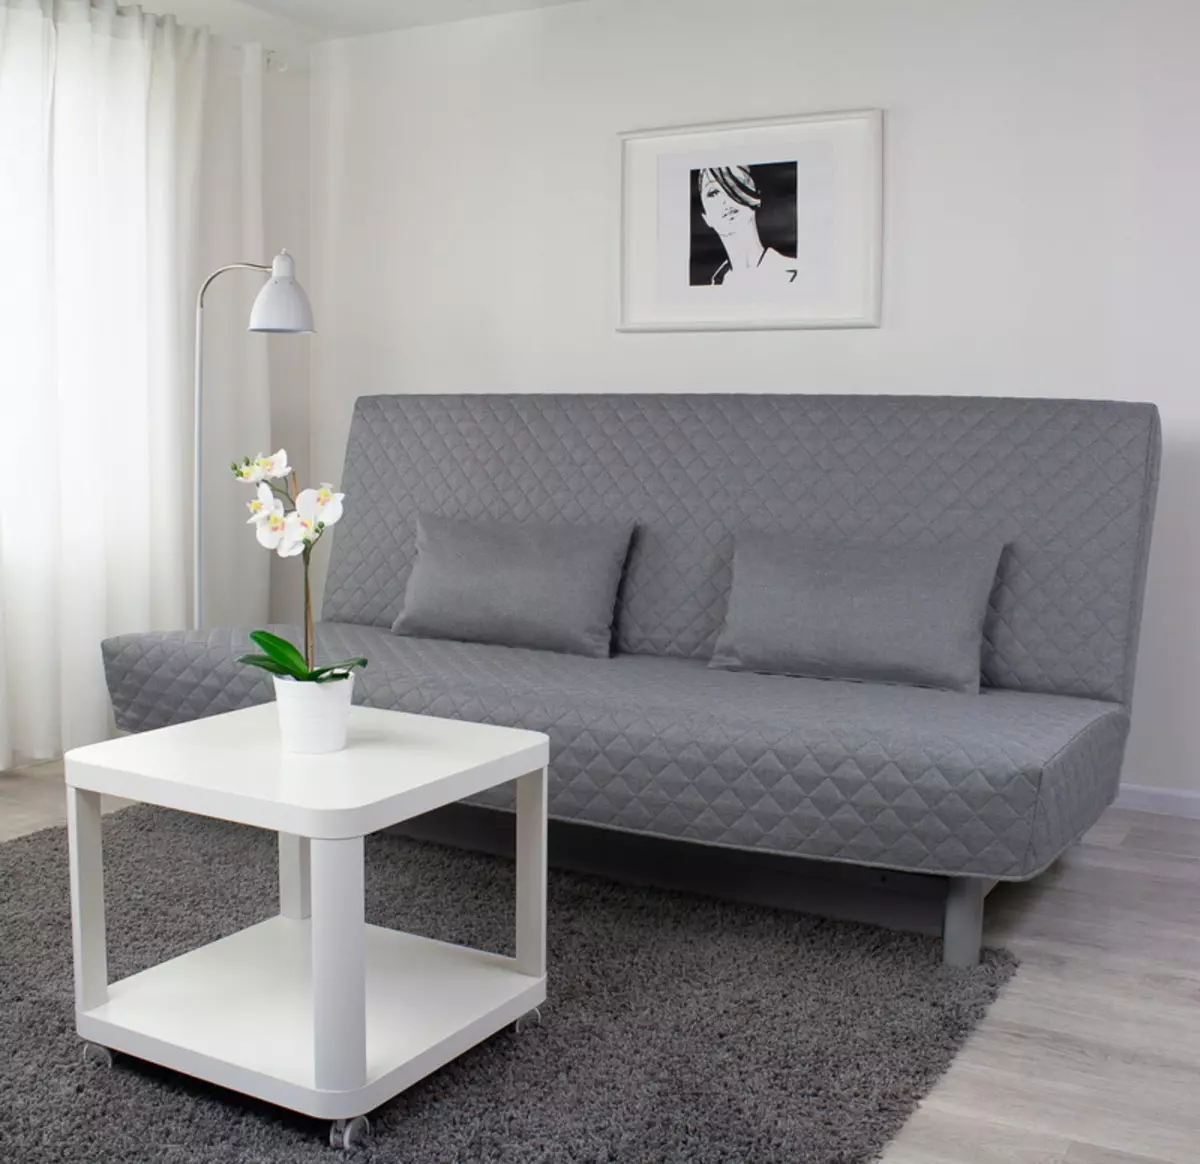 Puzdro na pohovke IKEA: výber lôžok pre rohové pohovky bez podrúčkania, univerzálne kryty a iné možnosti 8963_4